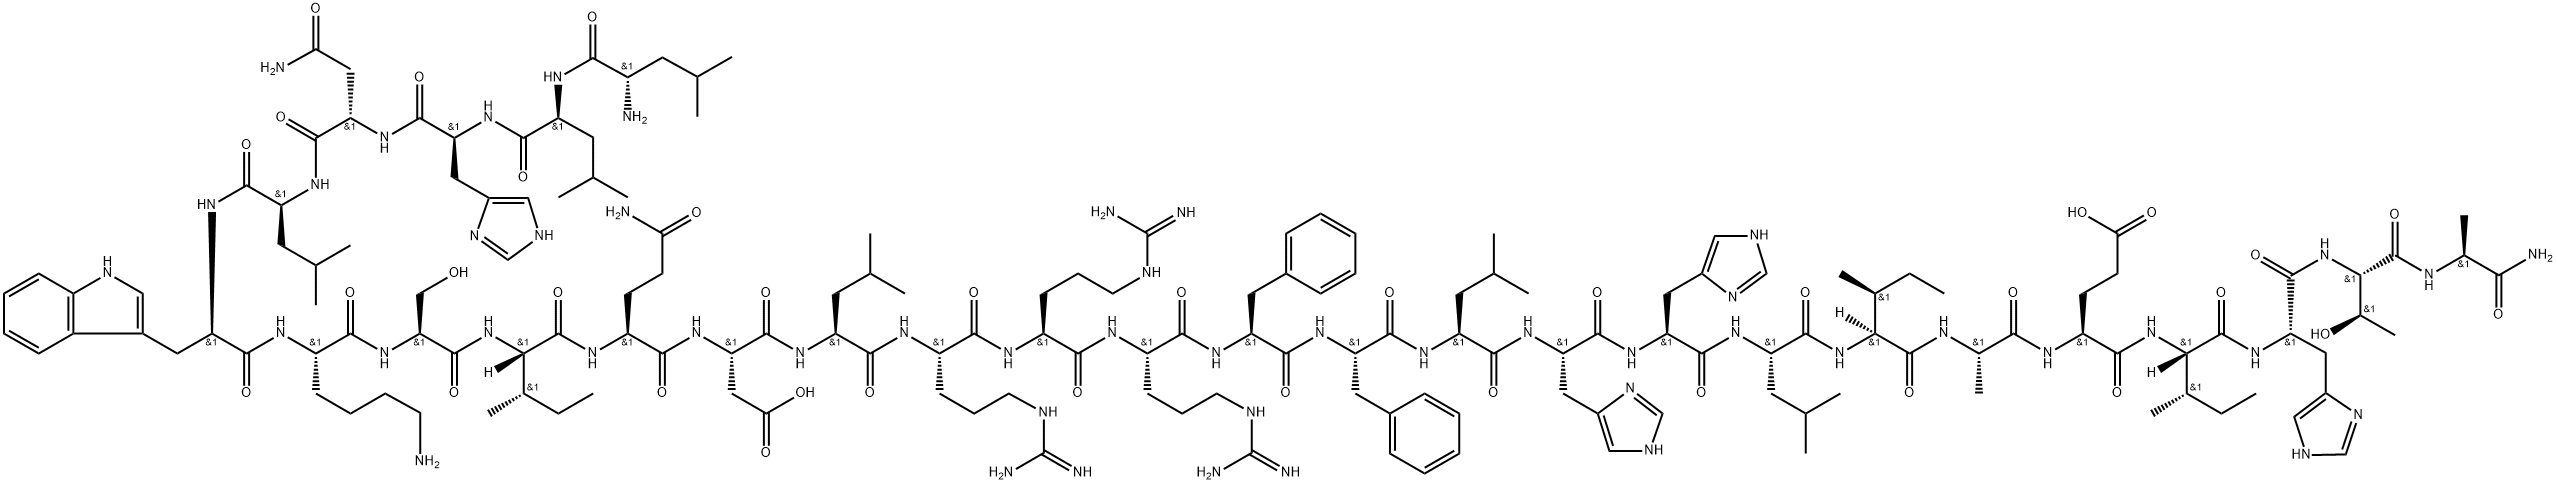 (Asn10,Leu11,D-Trp12)-pTH-Related Protein (7-34) amide (human, mouse, rat) H-Leu-Leu-His-Asn-Leu-D-Trp-Lys-Ser-Ile-Gln-Asp-Leu-Arg-Arg-Arg-Phe-Phe-Leu-His-His-Leu-Ile-Ala-Glu-Ile-His-Thr-Ala-NH2 Struktur